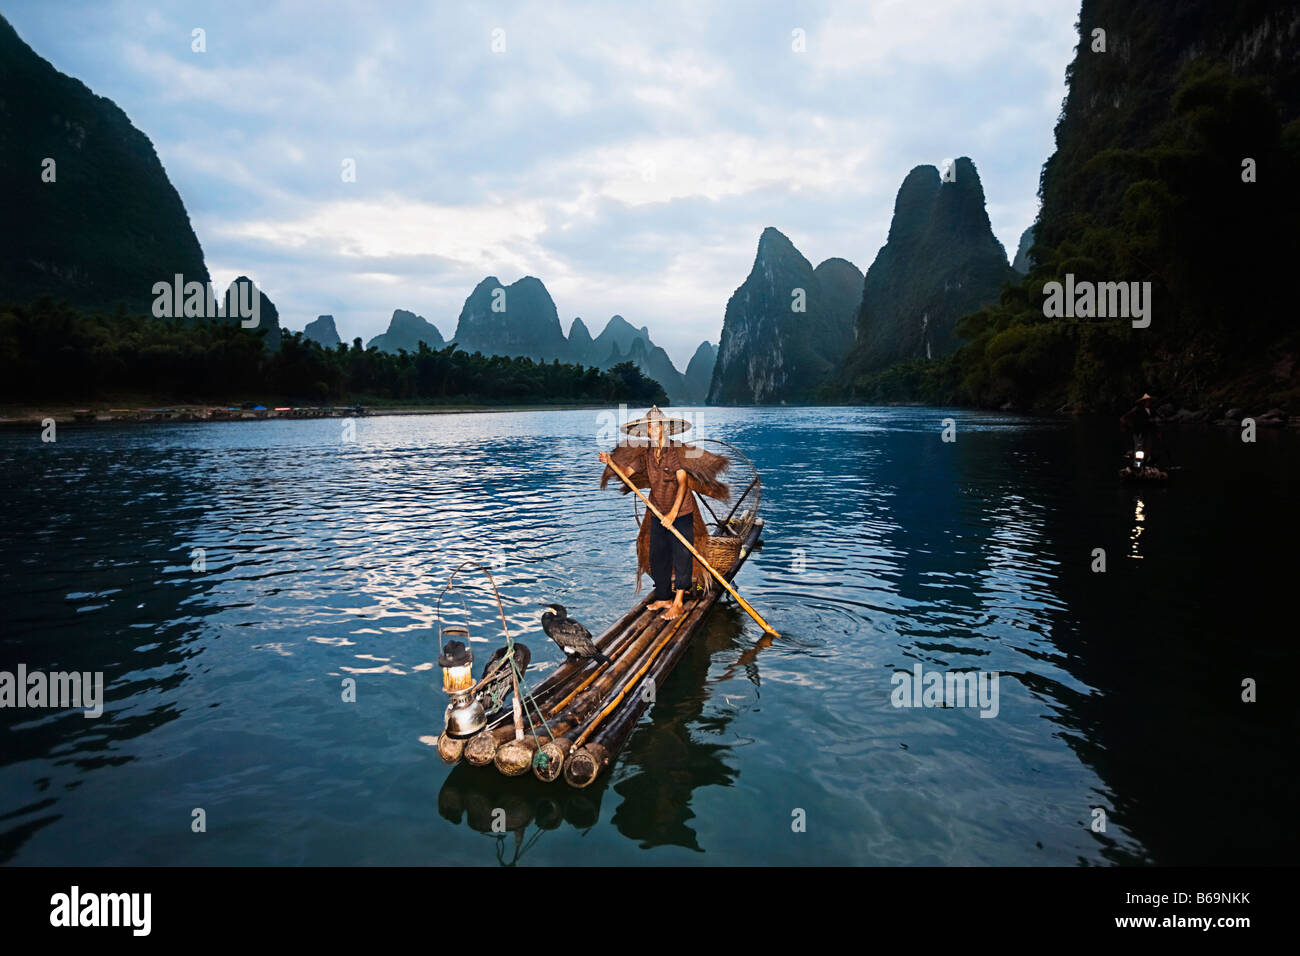 Fisherman standing on a wooden raft in a river, Li River, XingPing, Yangshuo, Guangxi Province, China Stock Photo